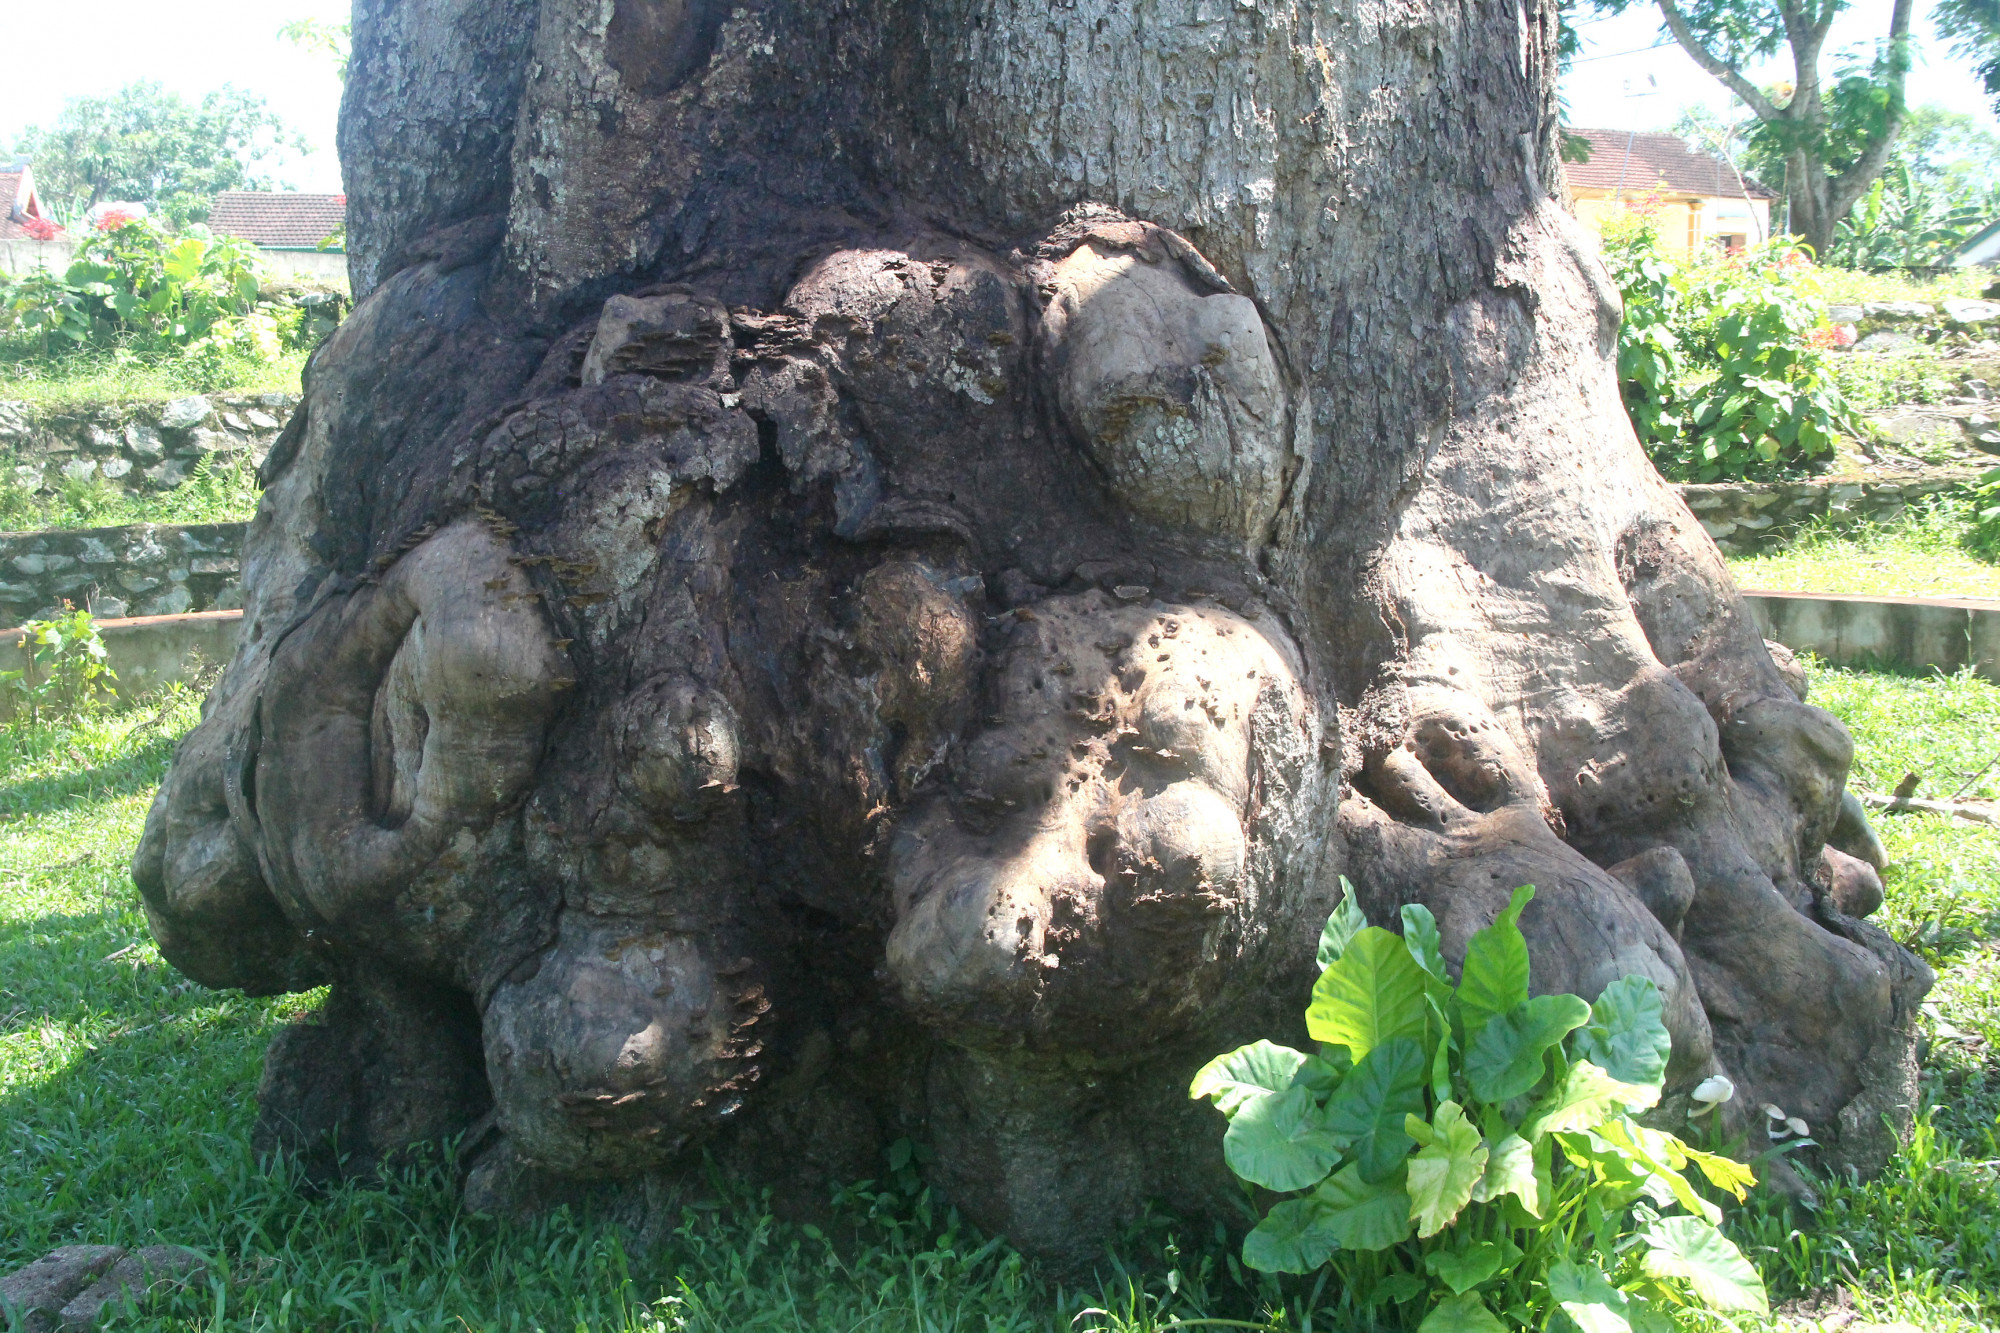 Cây trôi đã trên 300 năm tuổi, đường kính thân cây chừng 4m